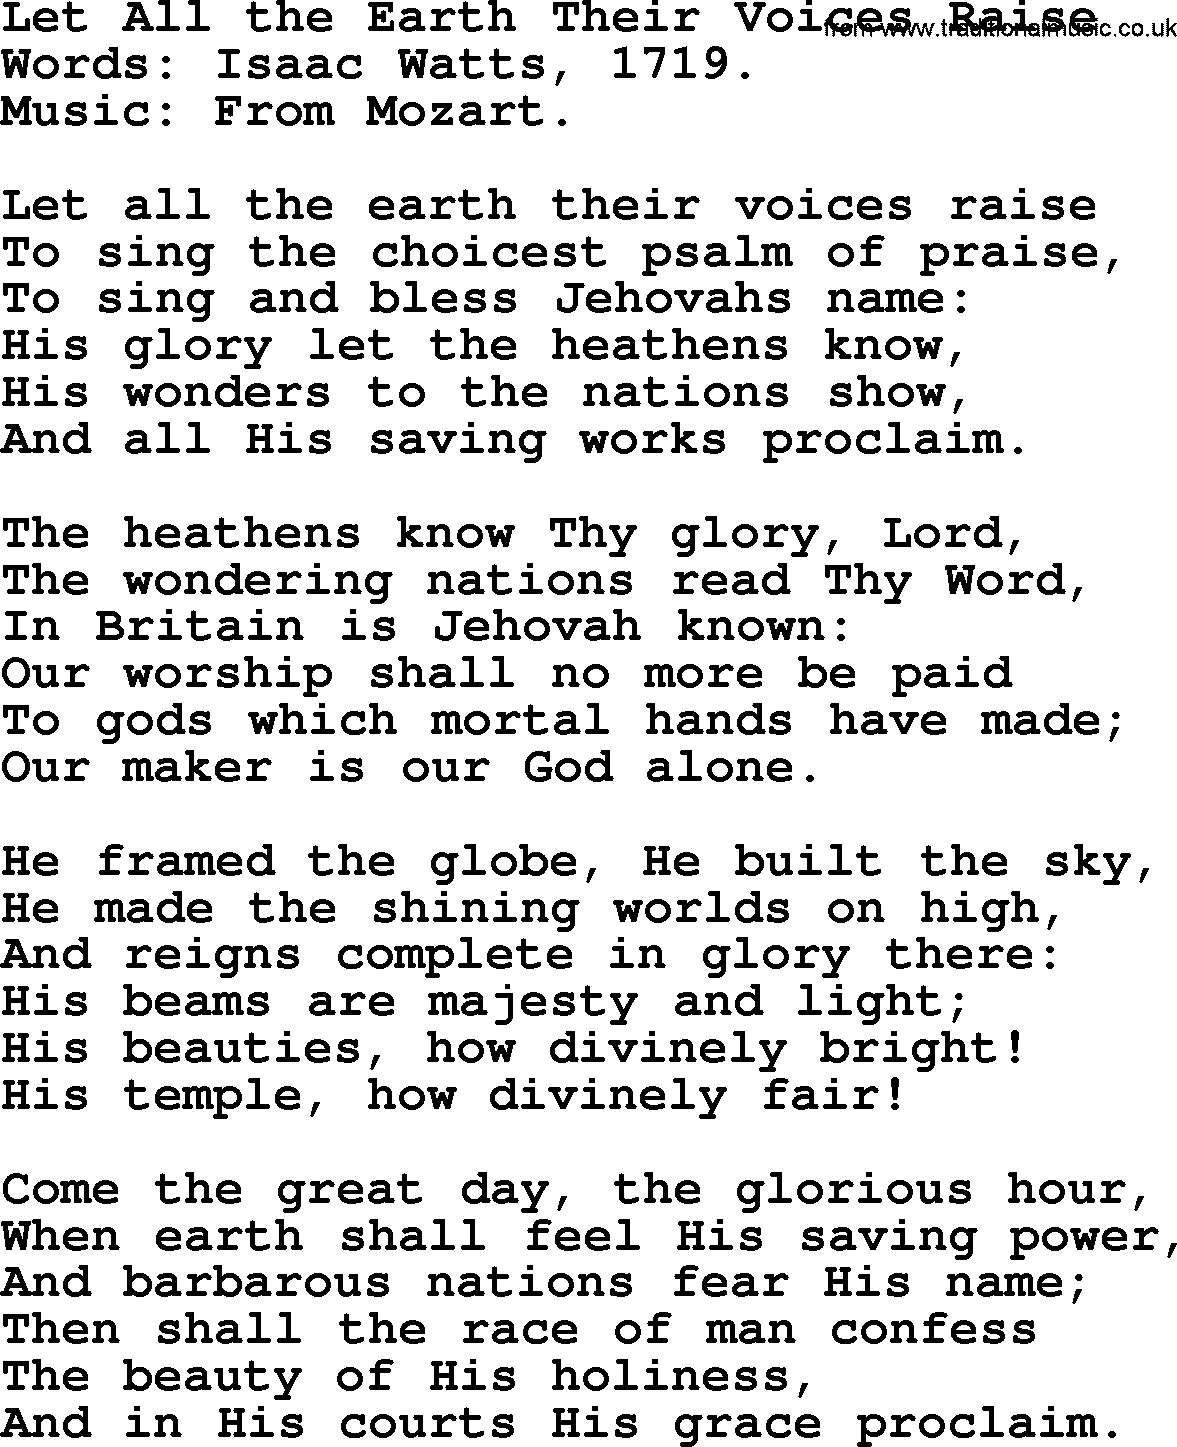 Isaac Watts Christian hymn: Let All the Earth Their Voices Raise- lyricss